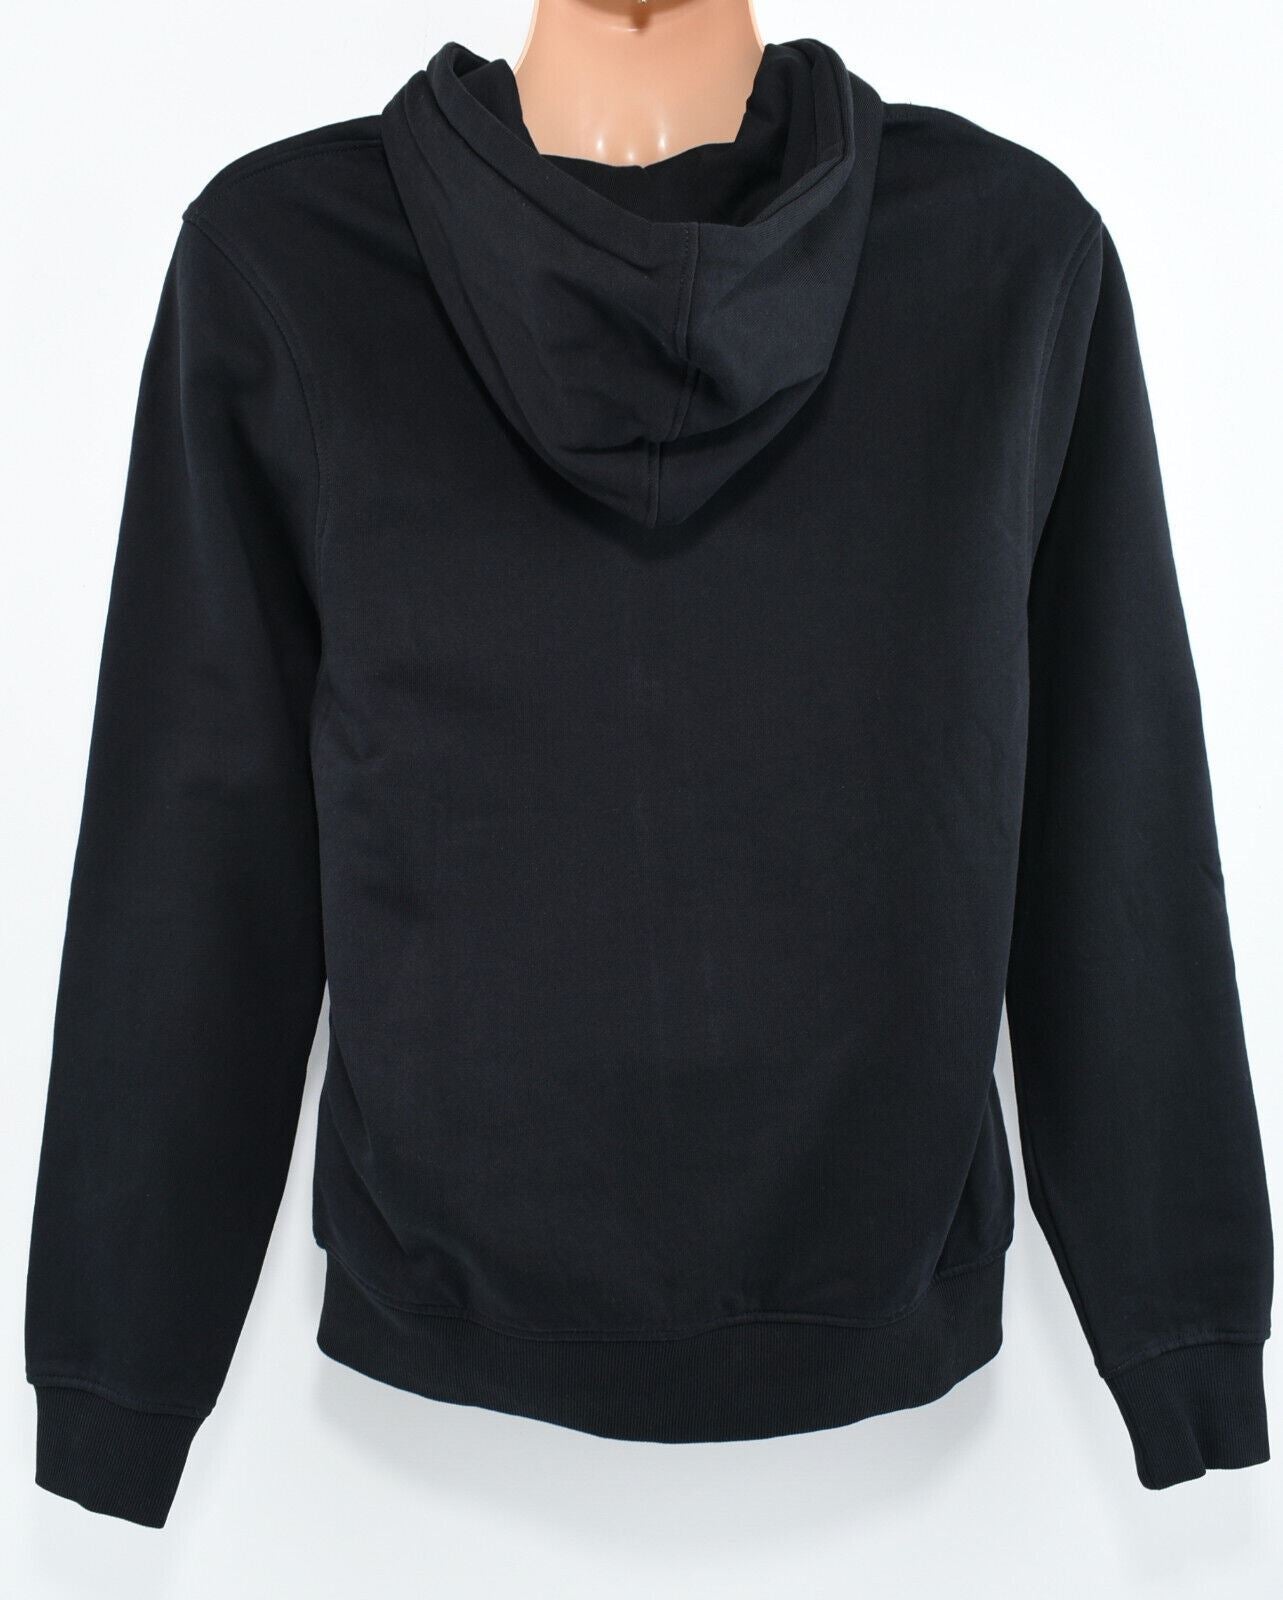 ROCKPORT Men's EDGE Full Zip Hoodie Sweatshirt Jacket,Black, size S